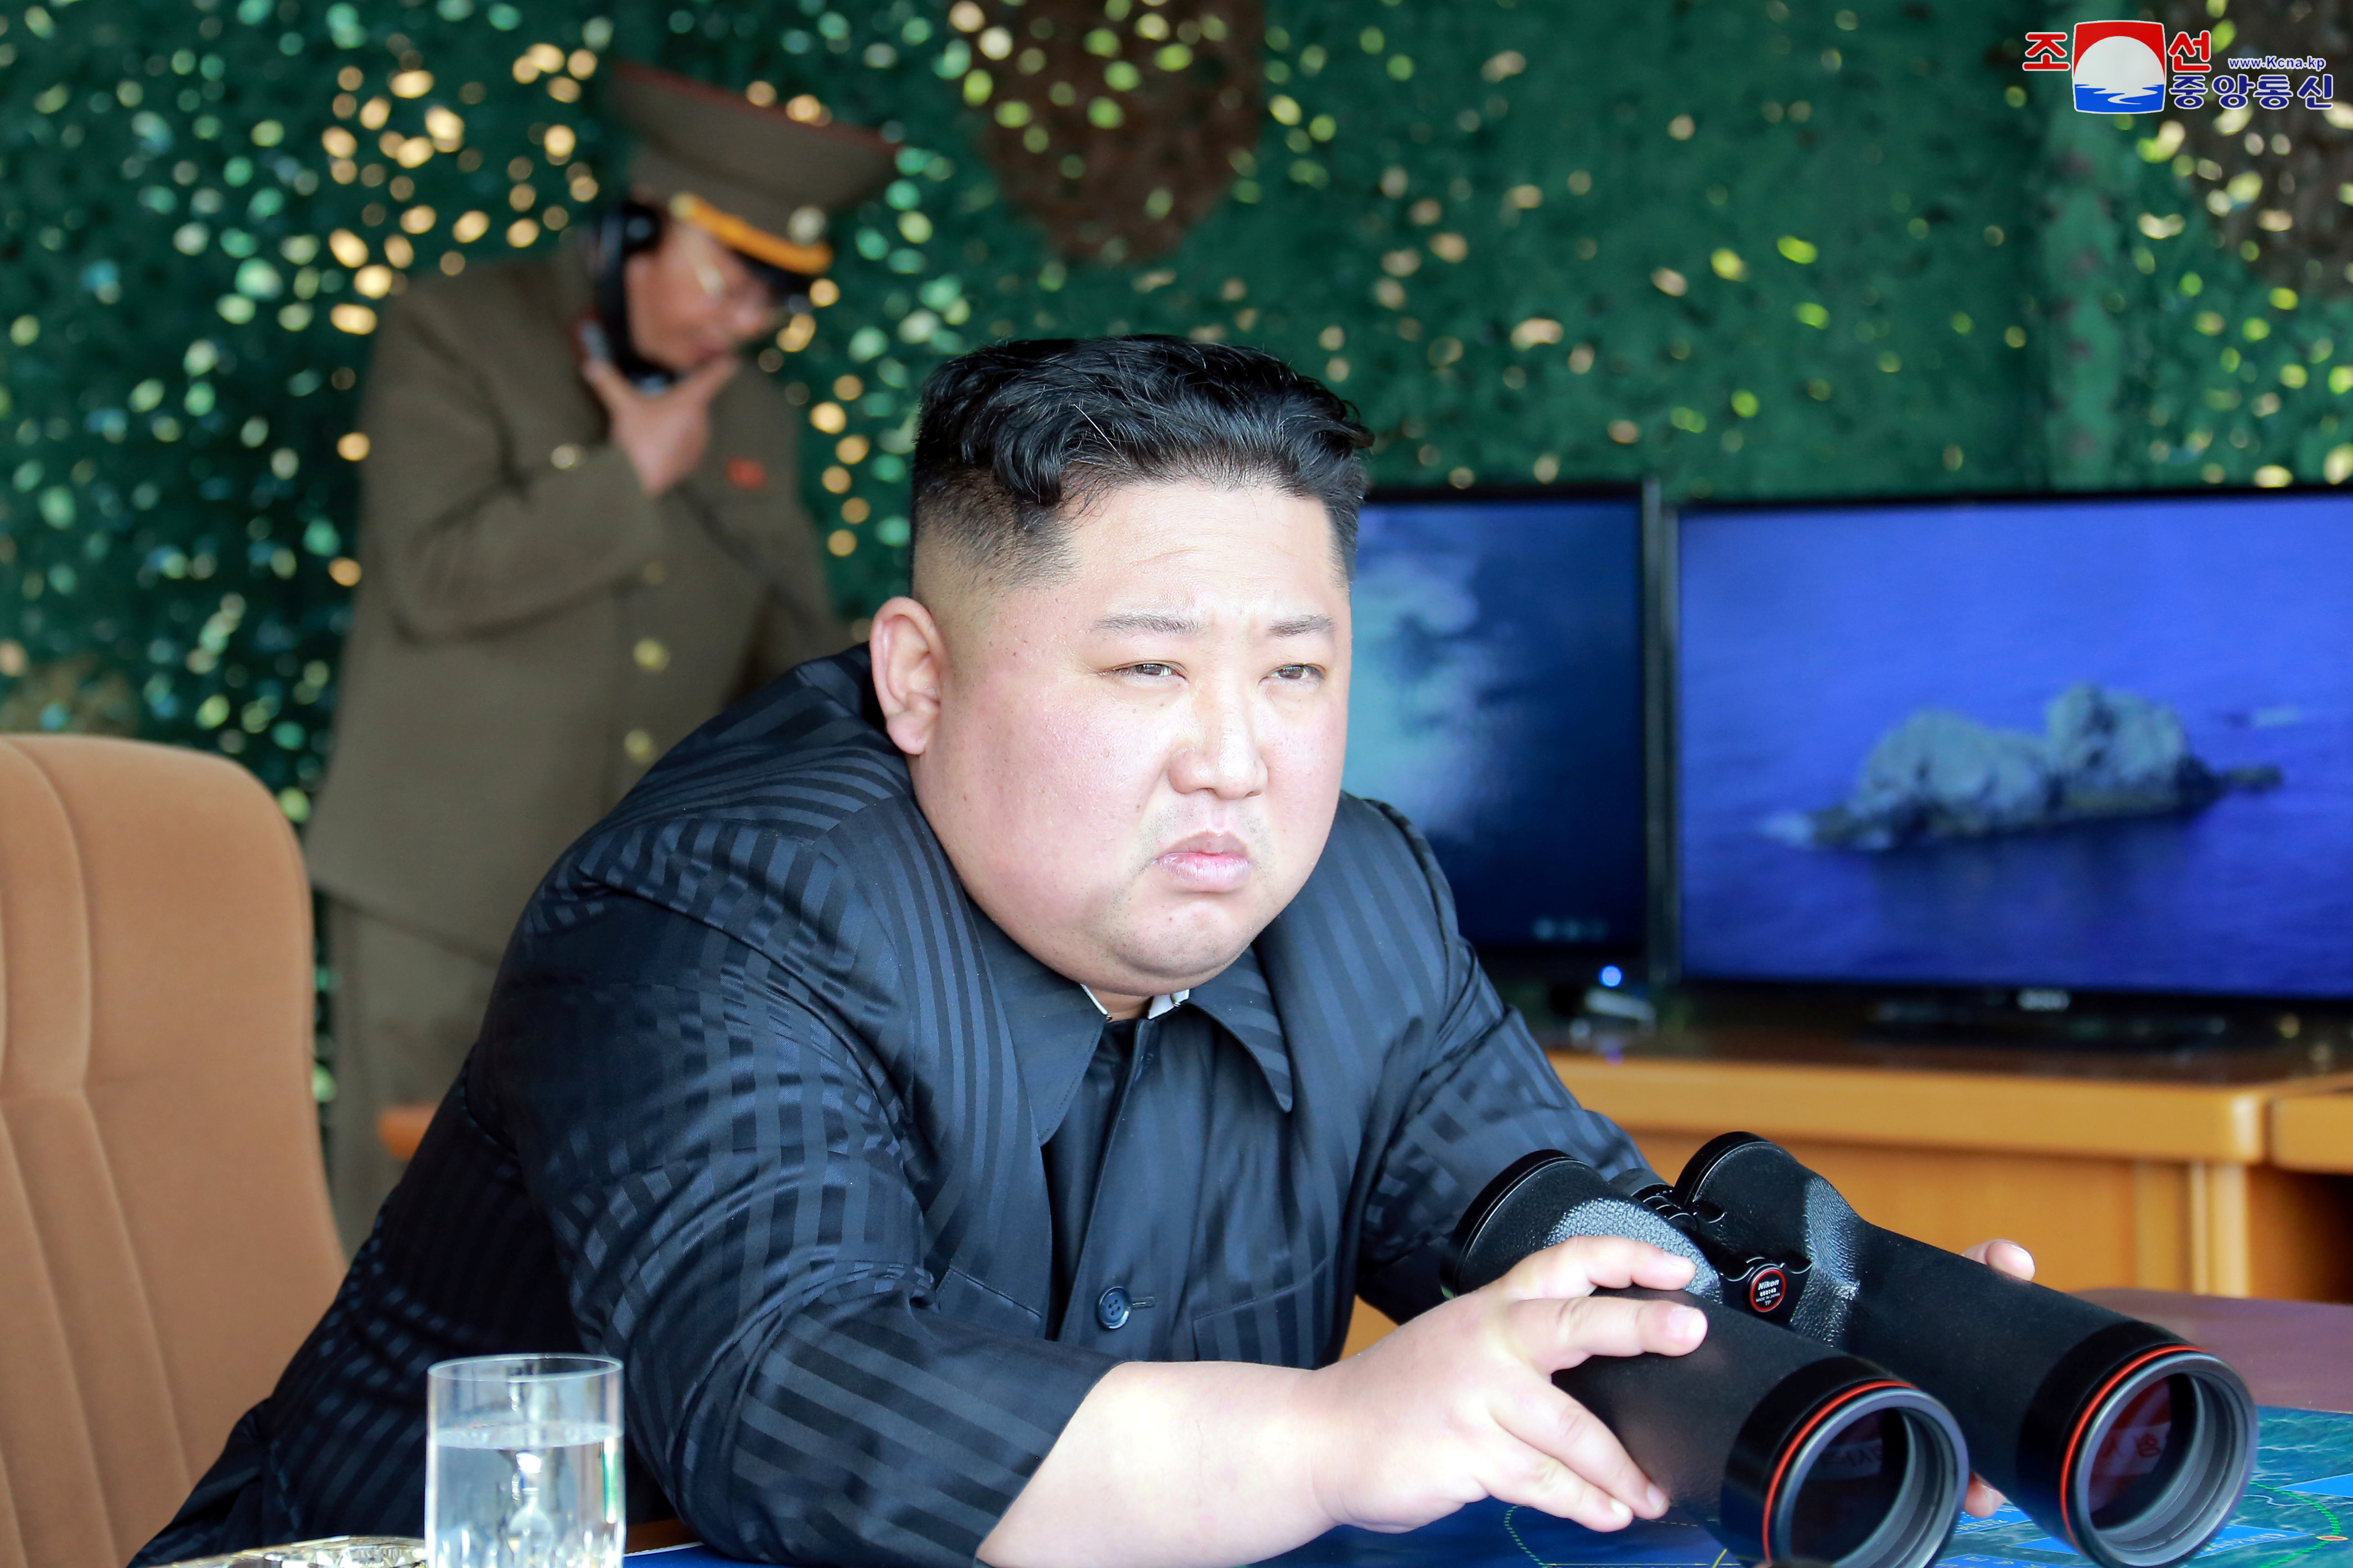 زعيم كوريا الشمالية يشرف على تدريب لراجمات صورايخ بعيدة المدى (7)